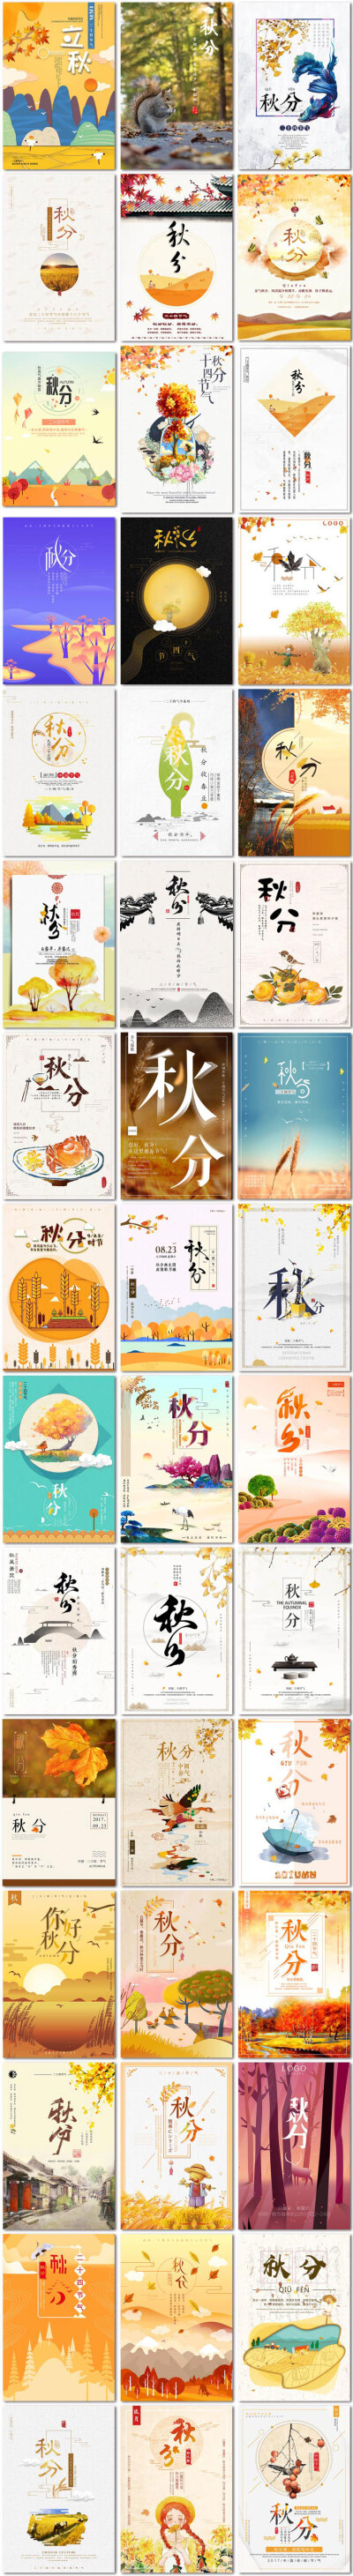 秋分二十四节气24节气中国传统节日微信插画海报psd模板素材设计